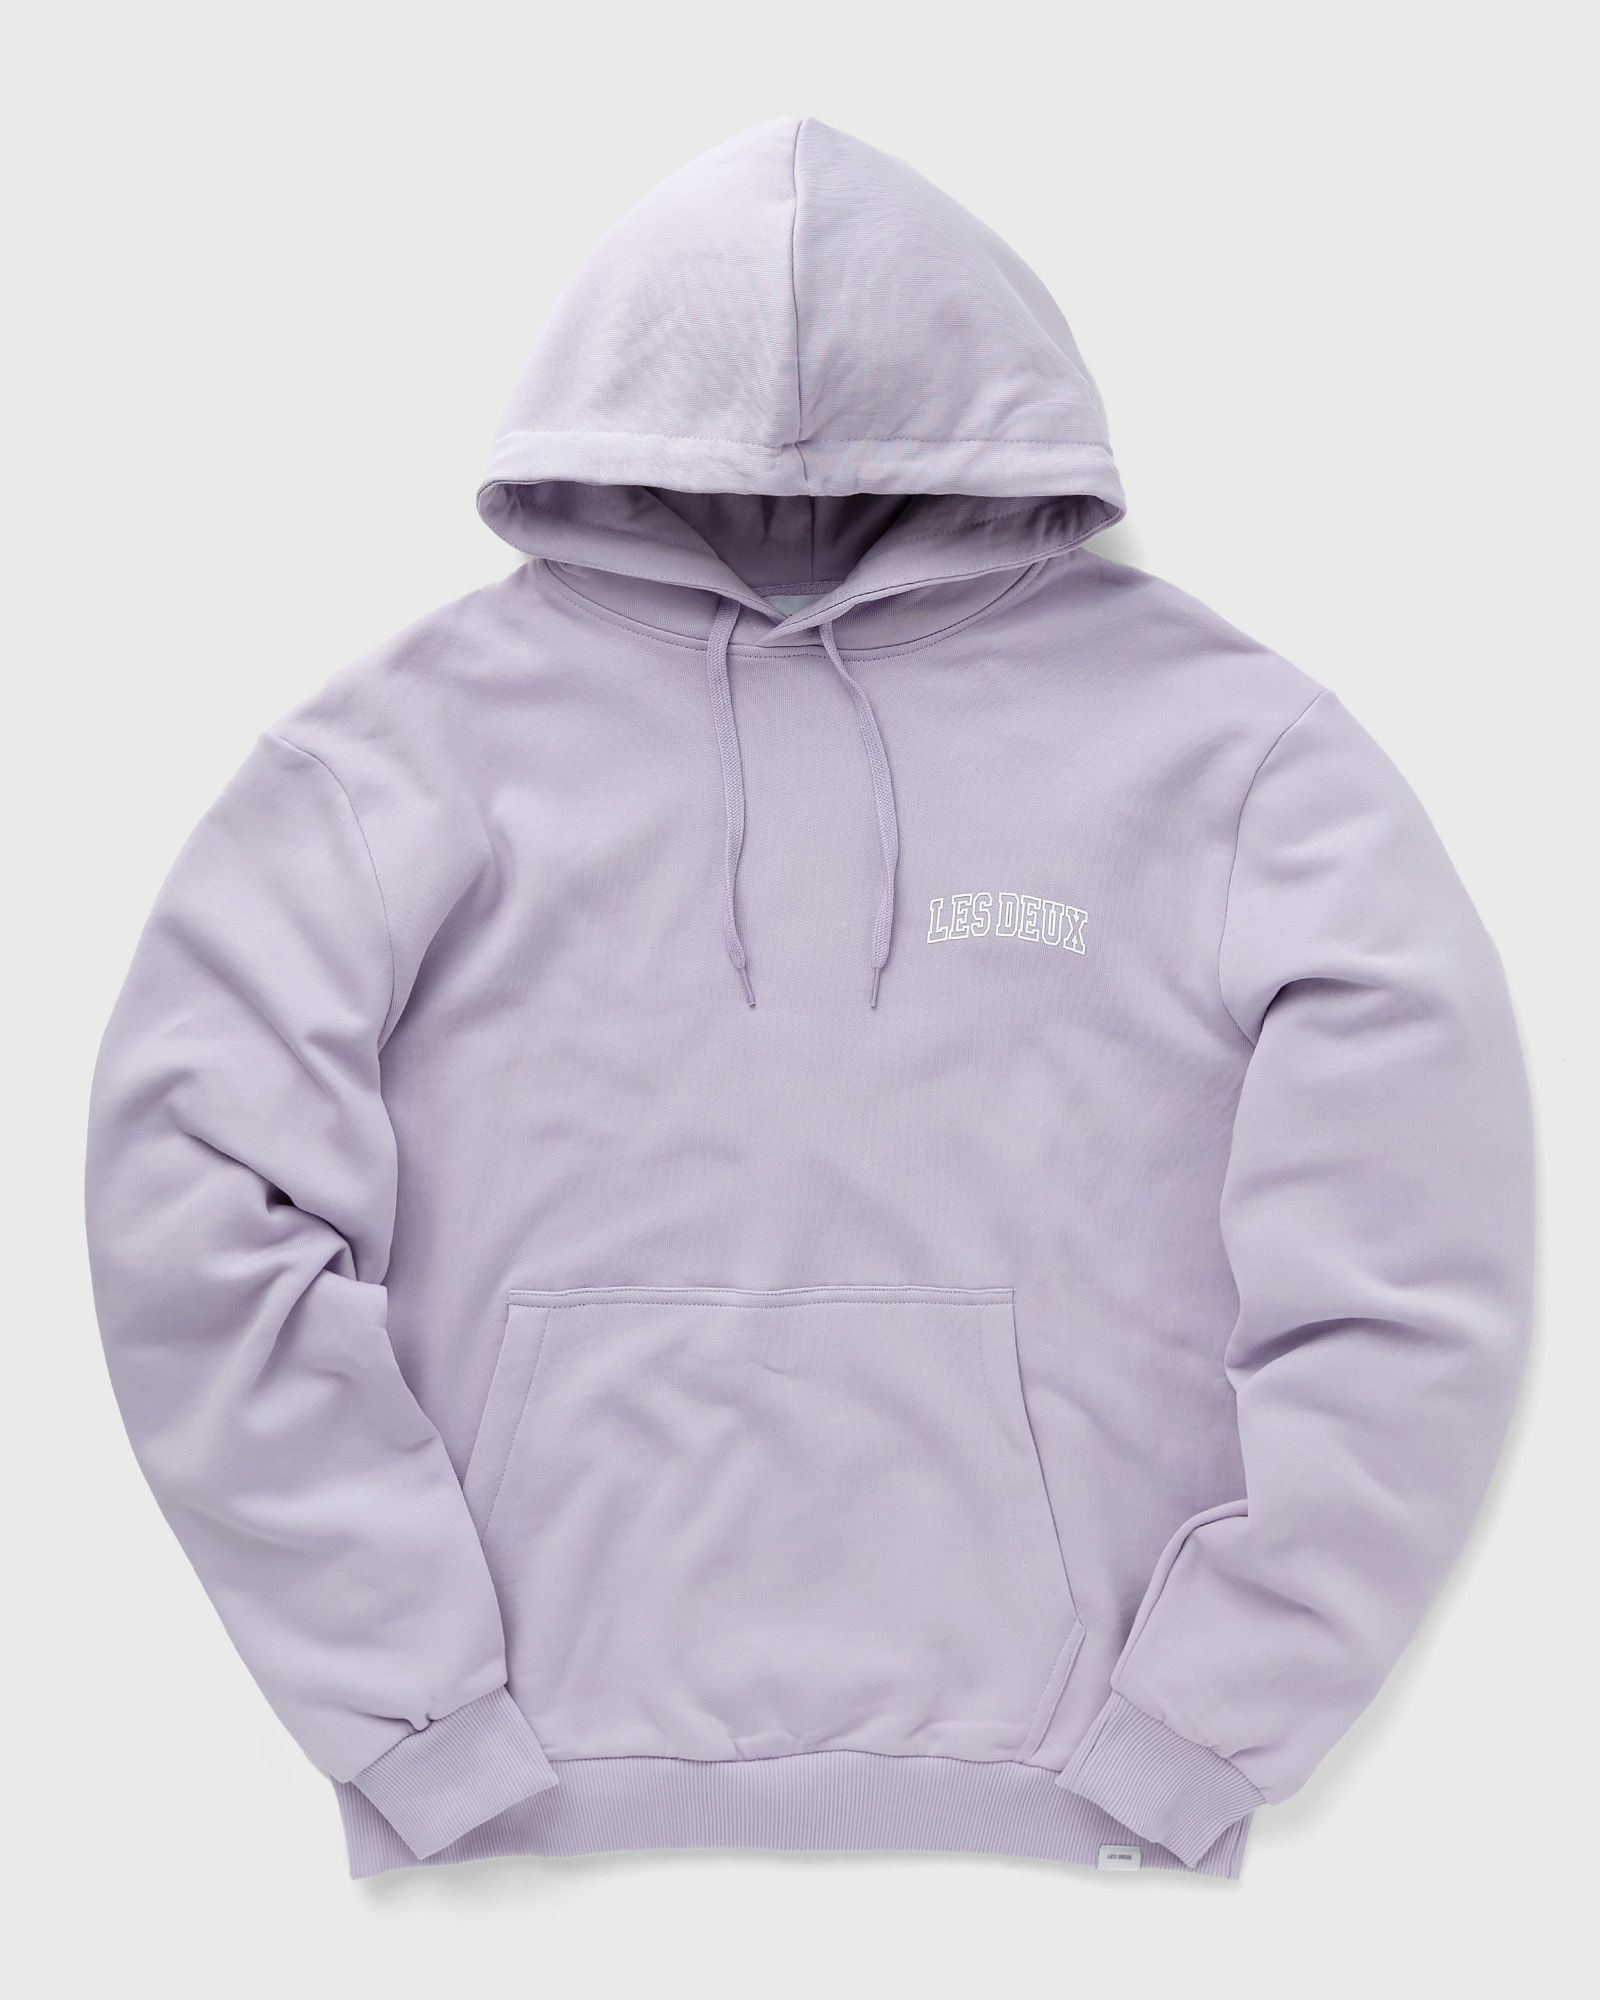 Les Deux - blake hoodie 2.0 men hoodies purple in größe:l